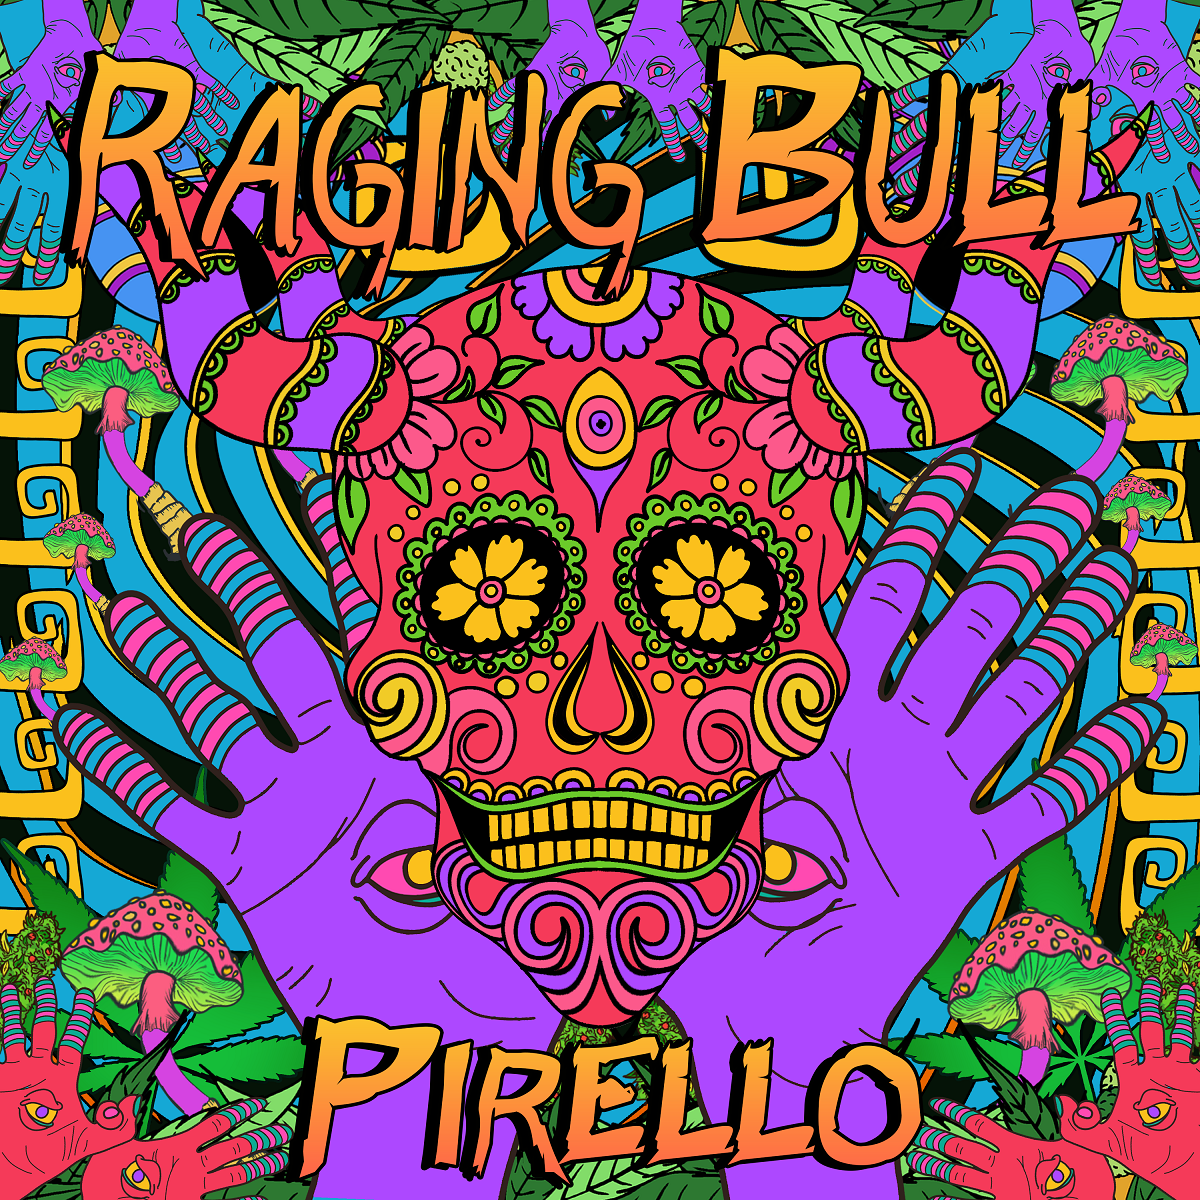 Pirello – ‘Raging Bull’